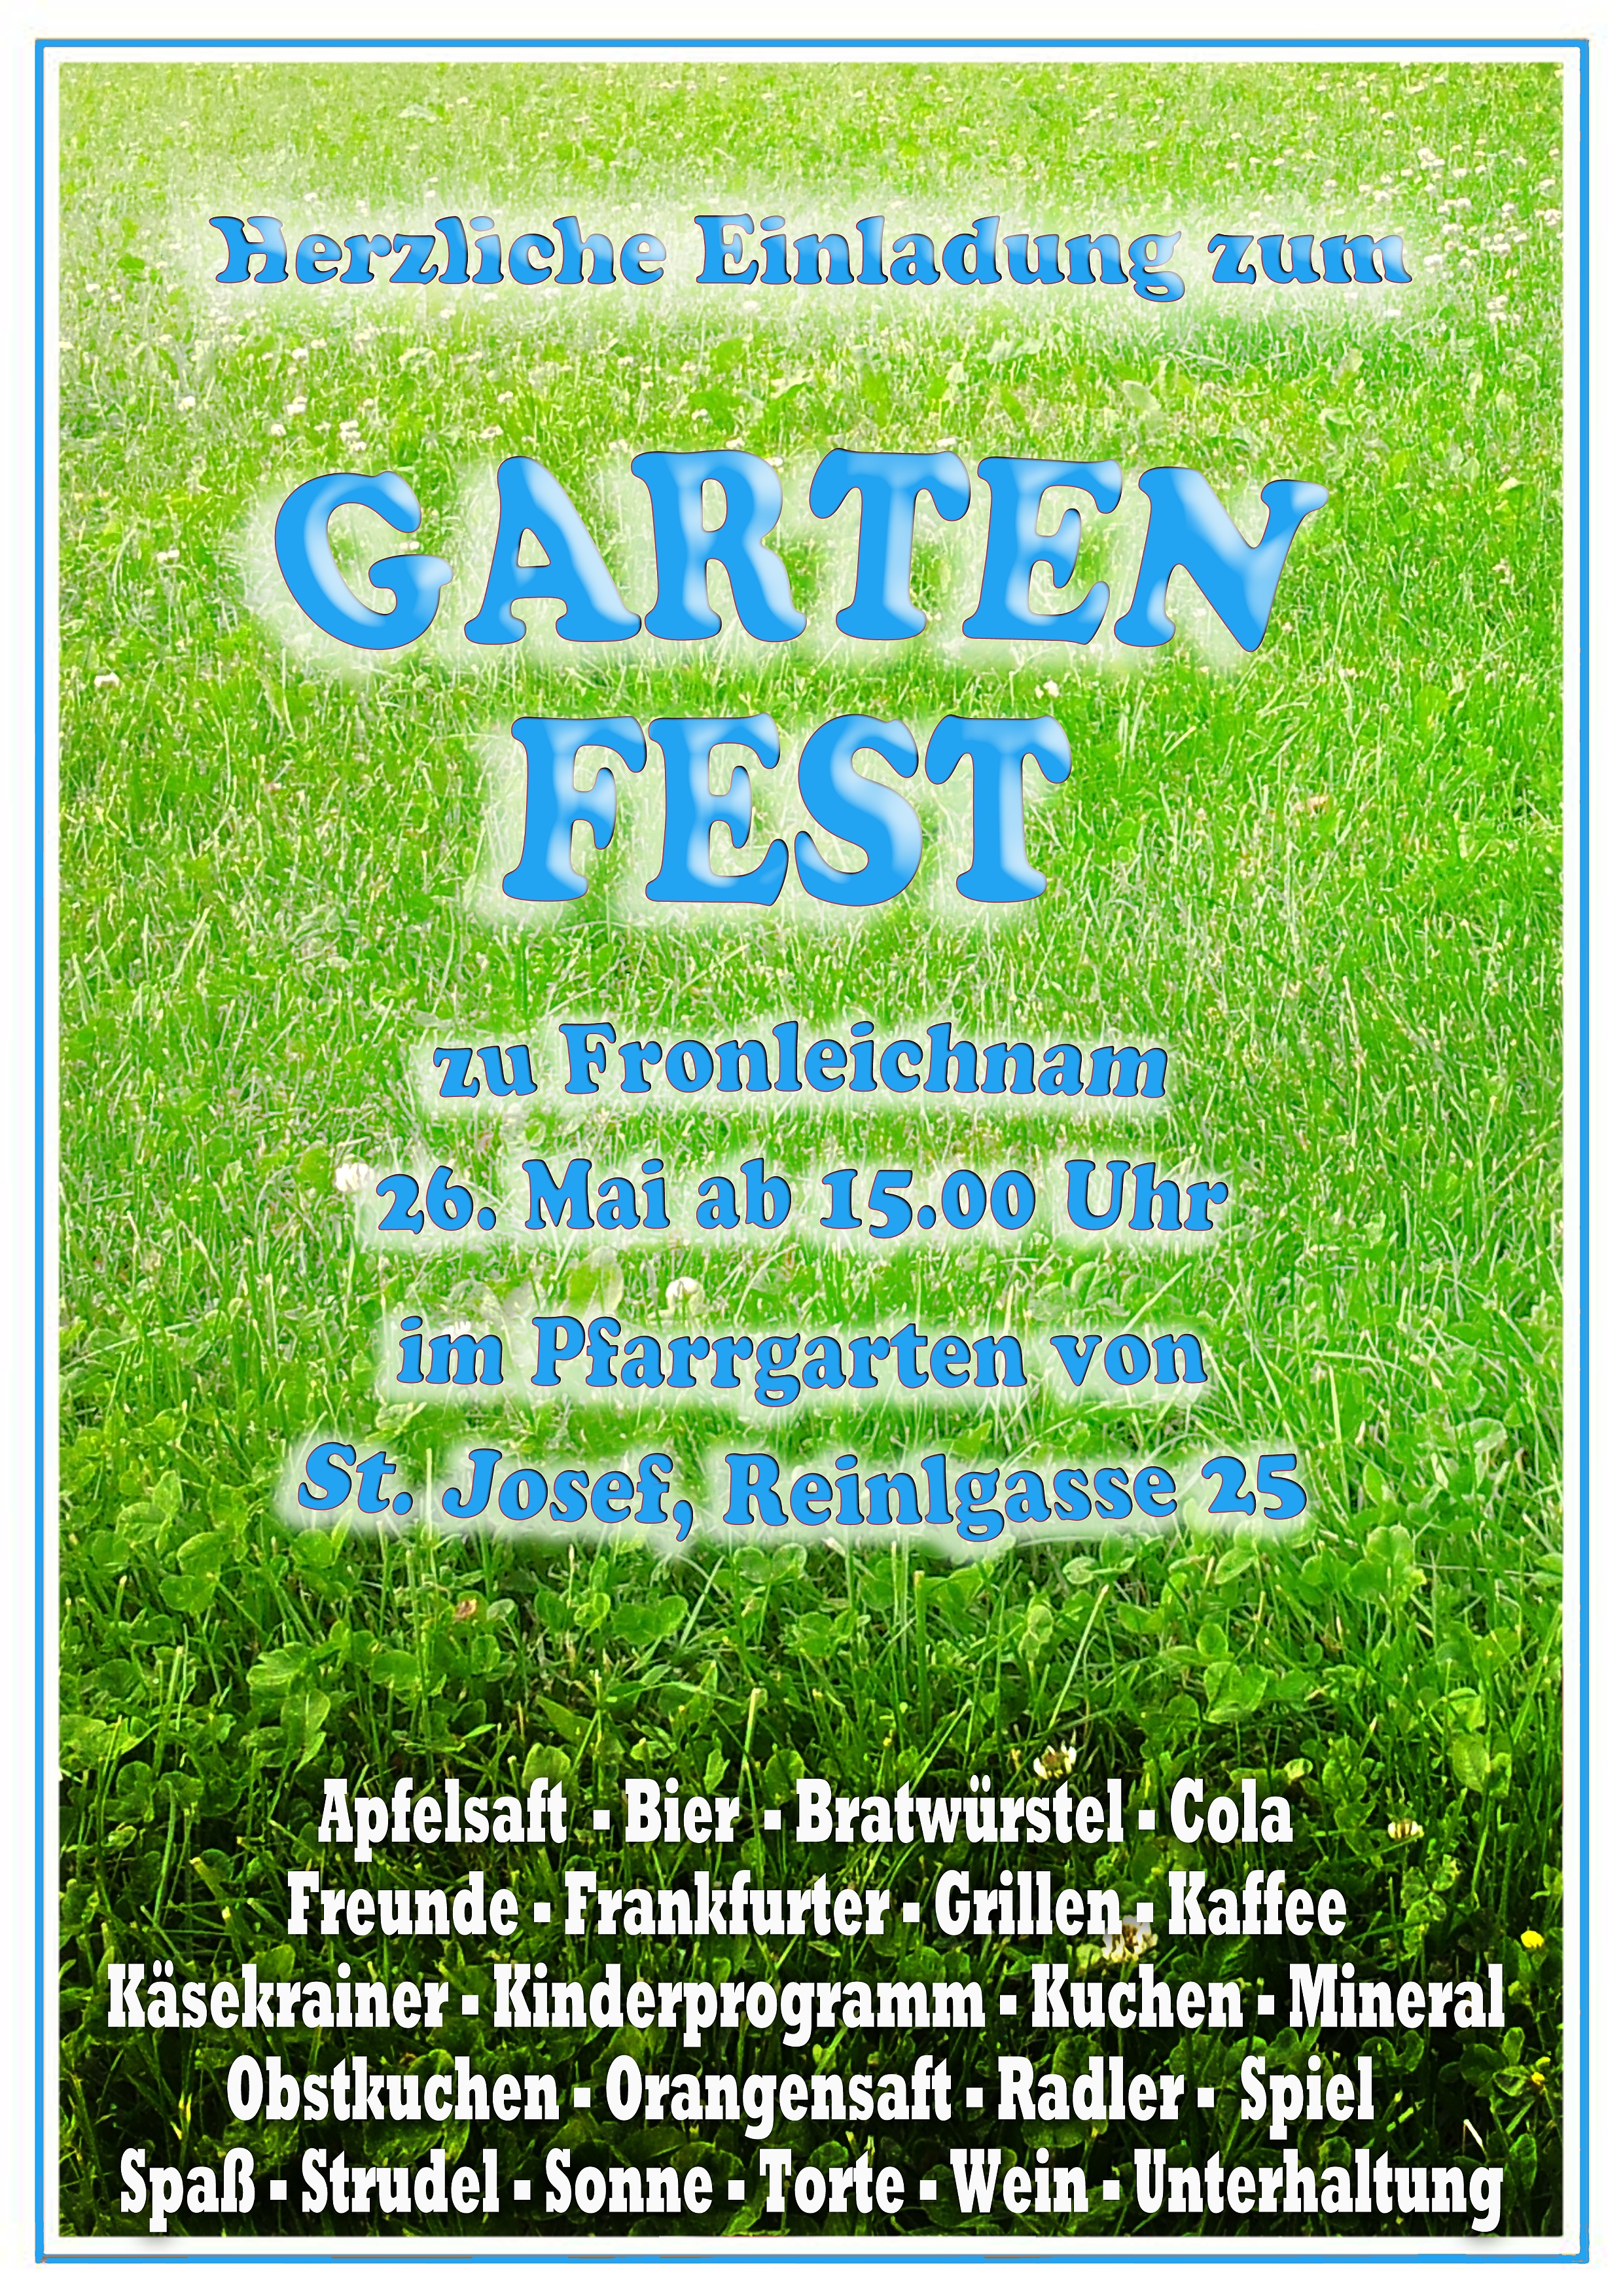 Gartenfest 2016